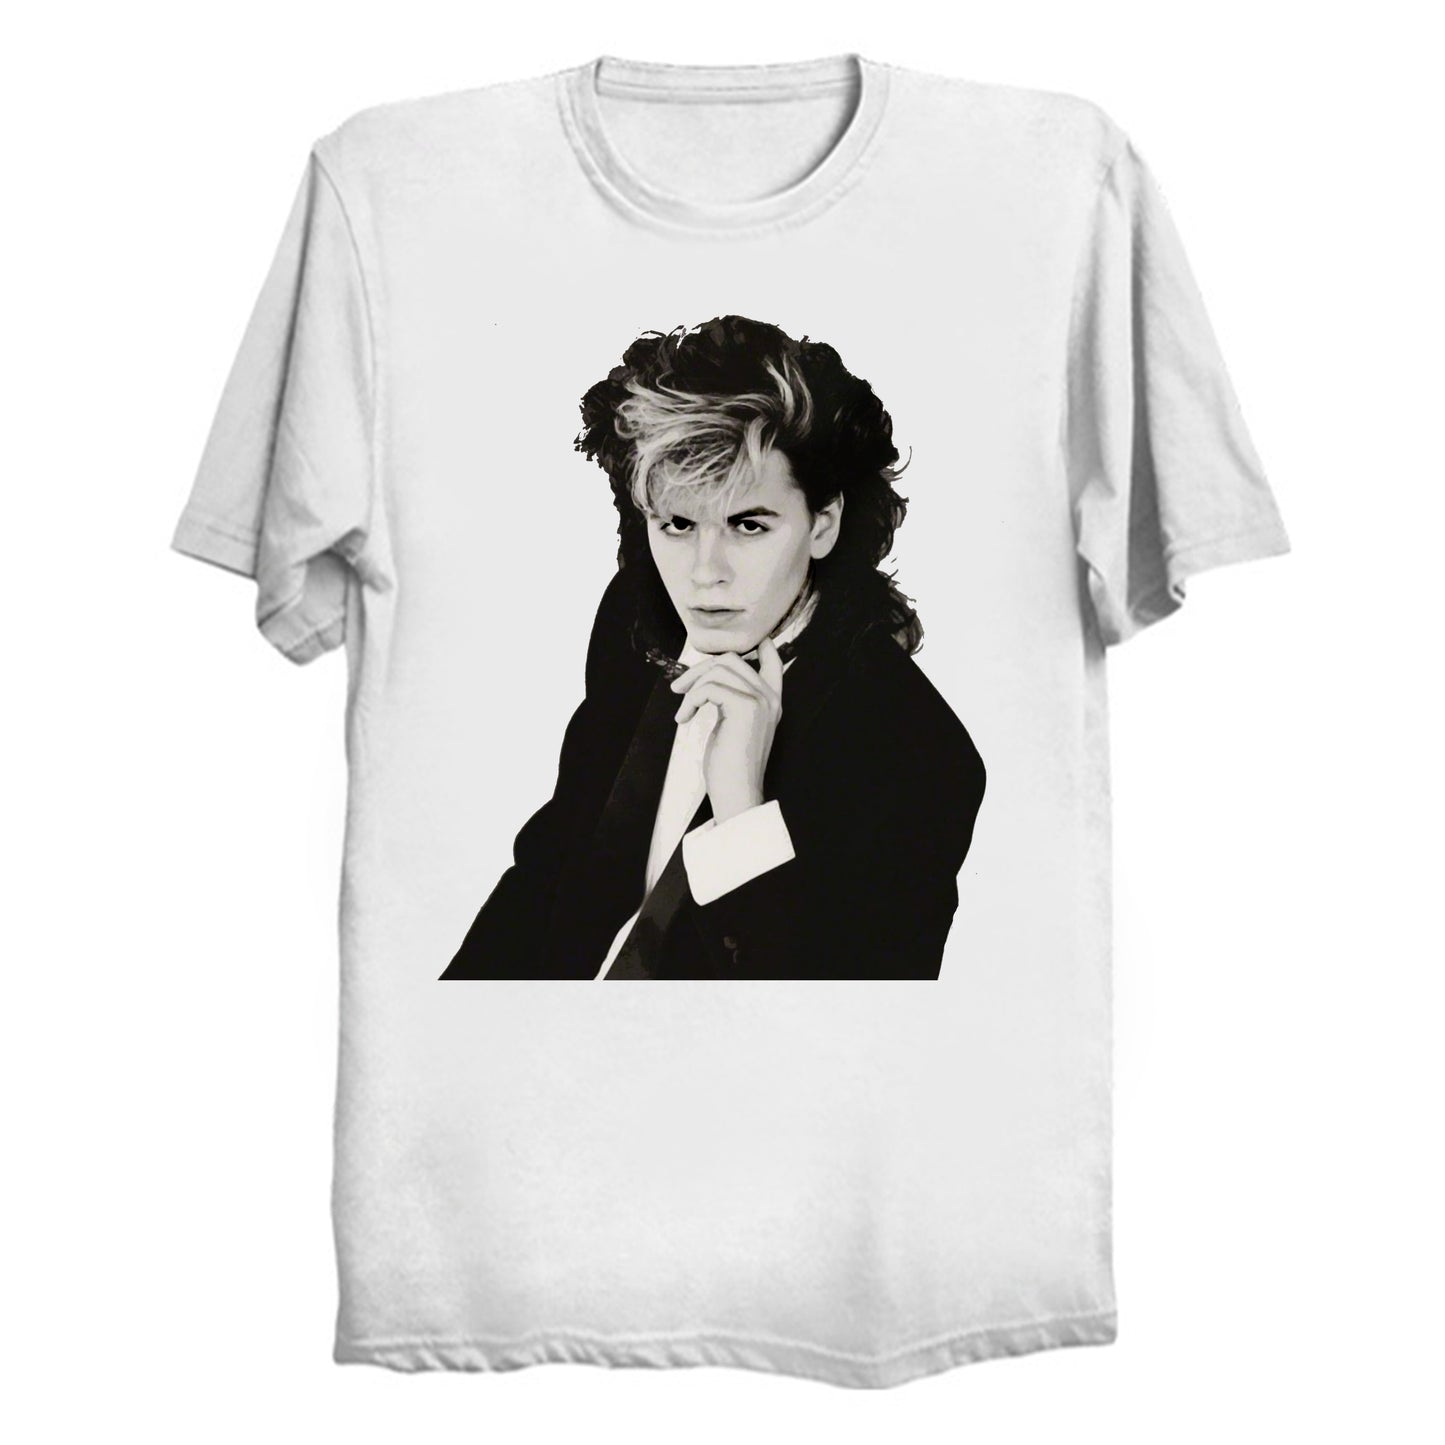 Sex God John Taylor out of Duran Duran T-Shirt (various colors)